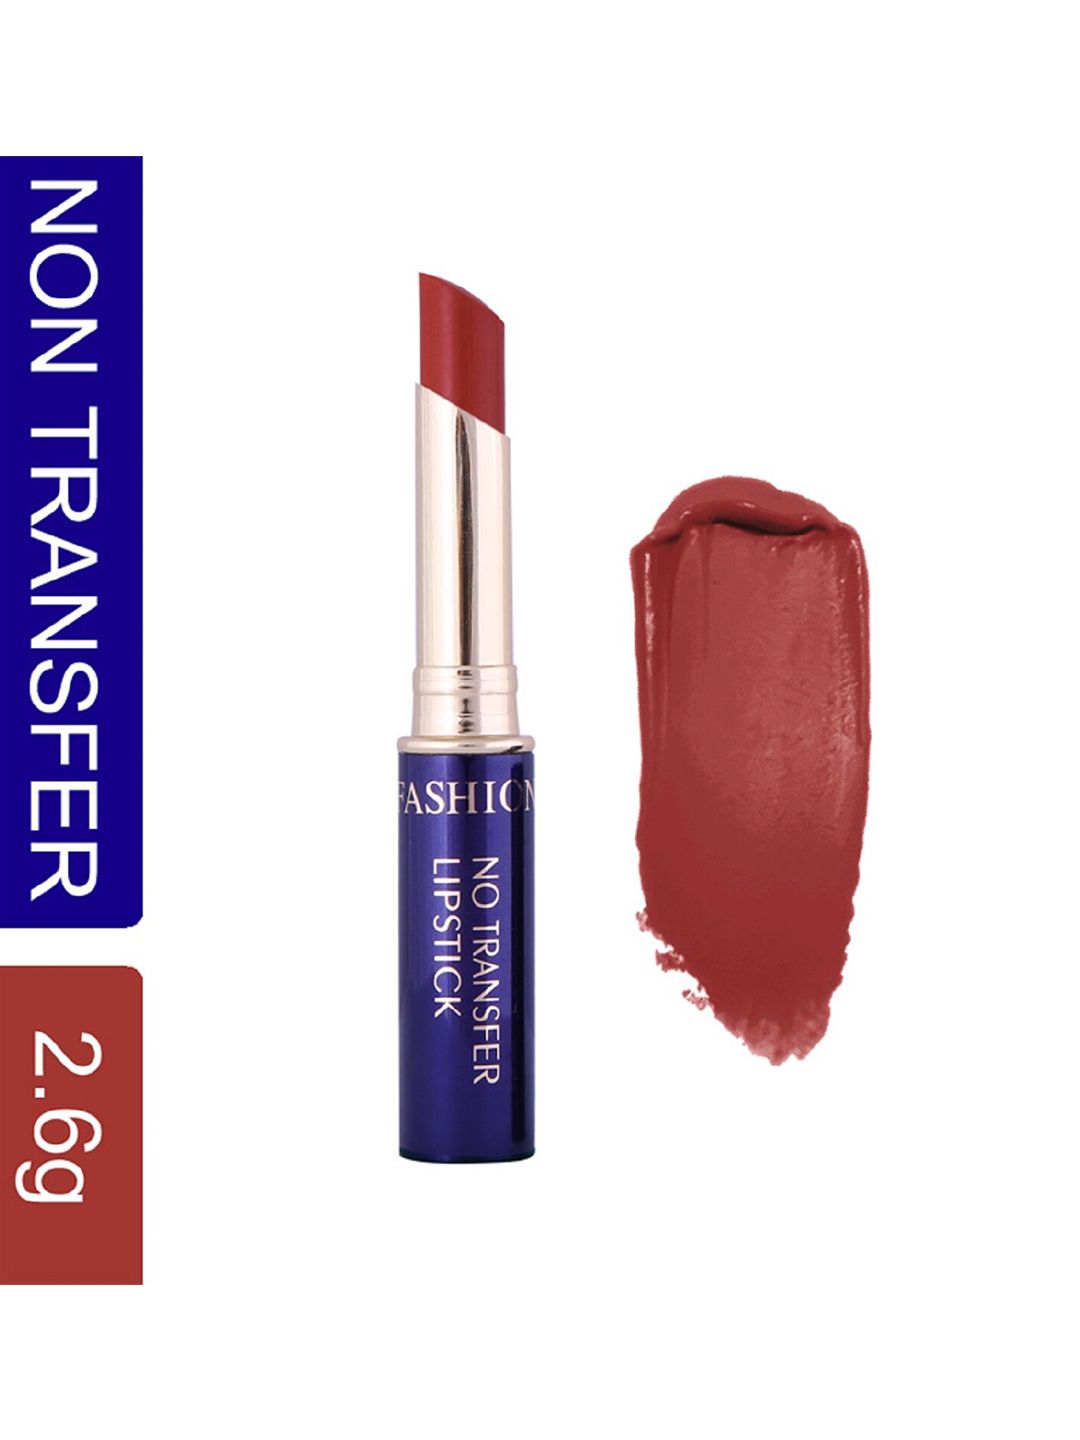 Fashion Colour No Transfer Matte Waterproof Lipstick 2.6 g - Chili 70 Price in India